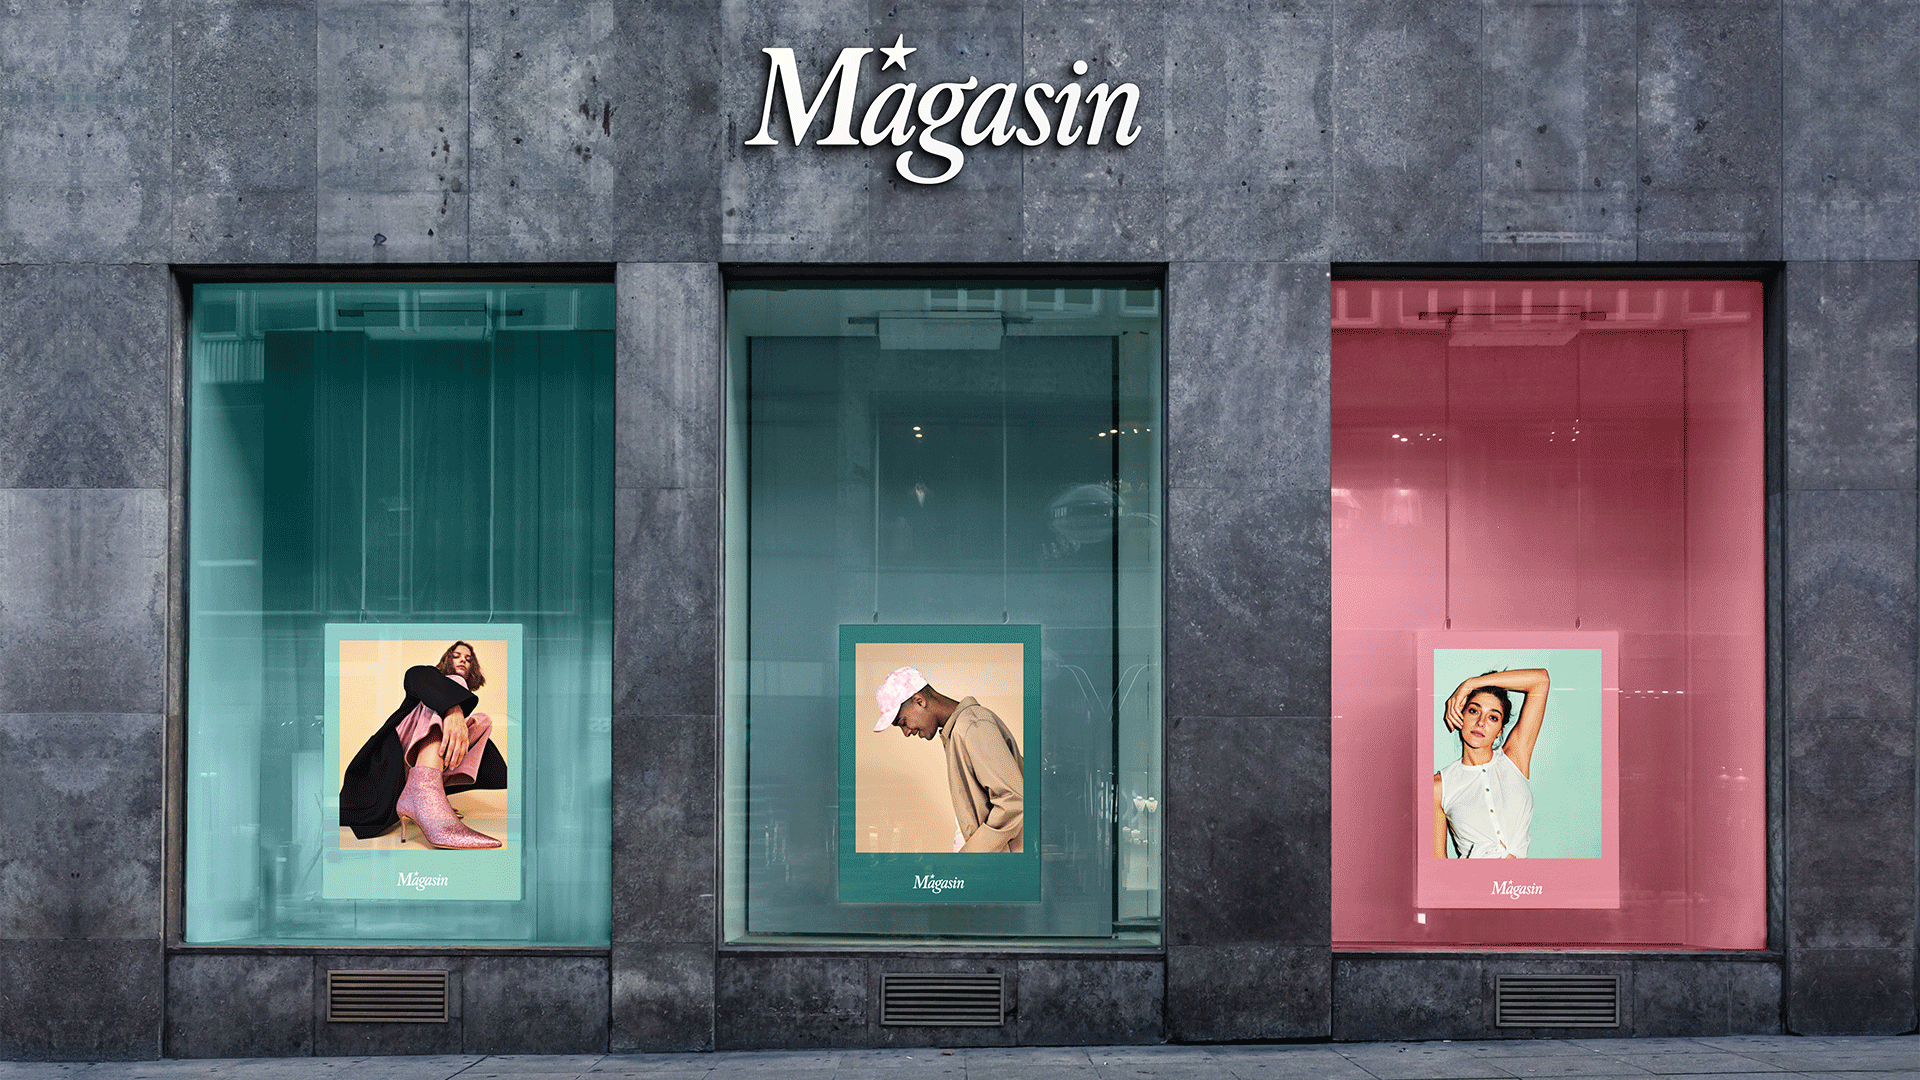 Magasin window display mockup gif. by LOOP Associates